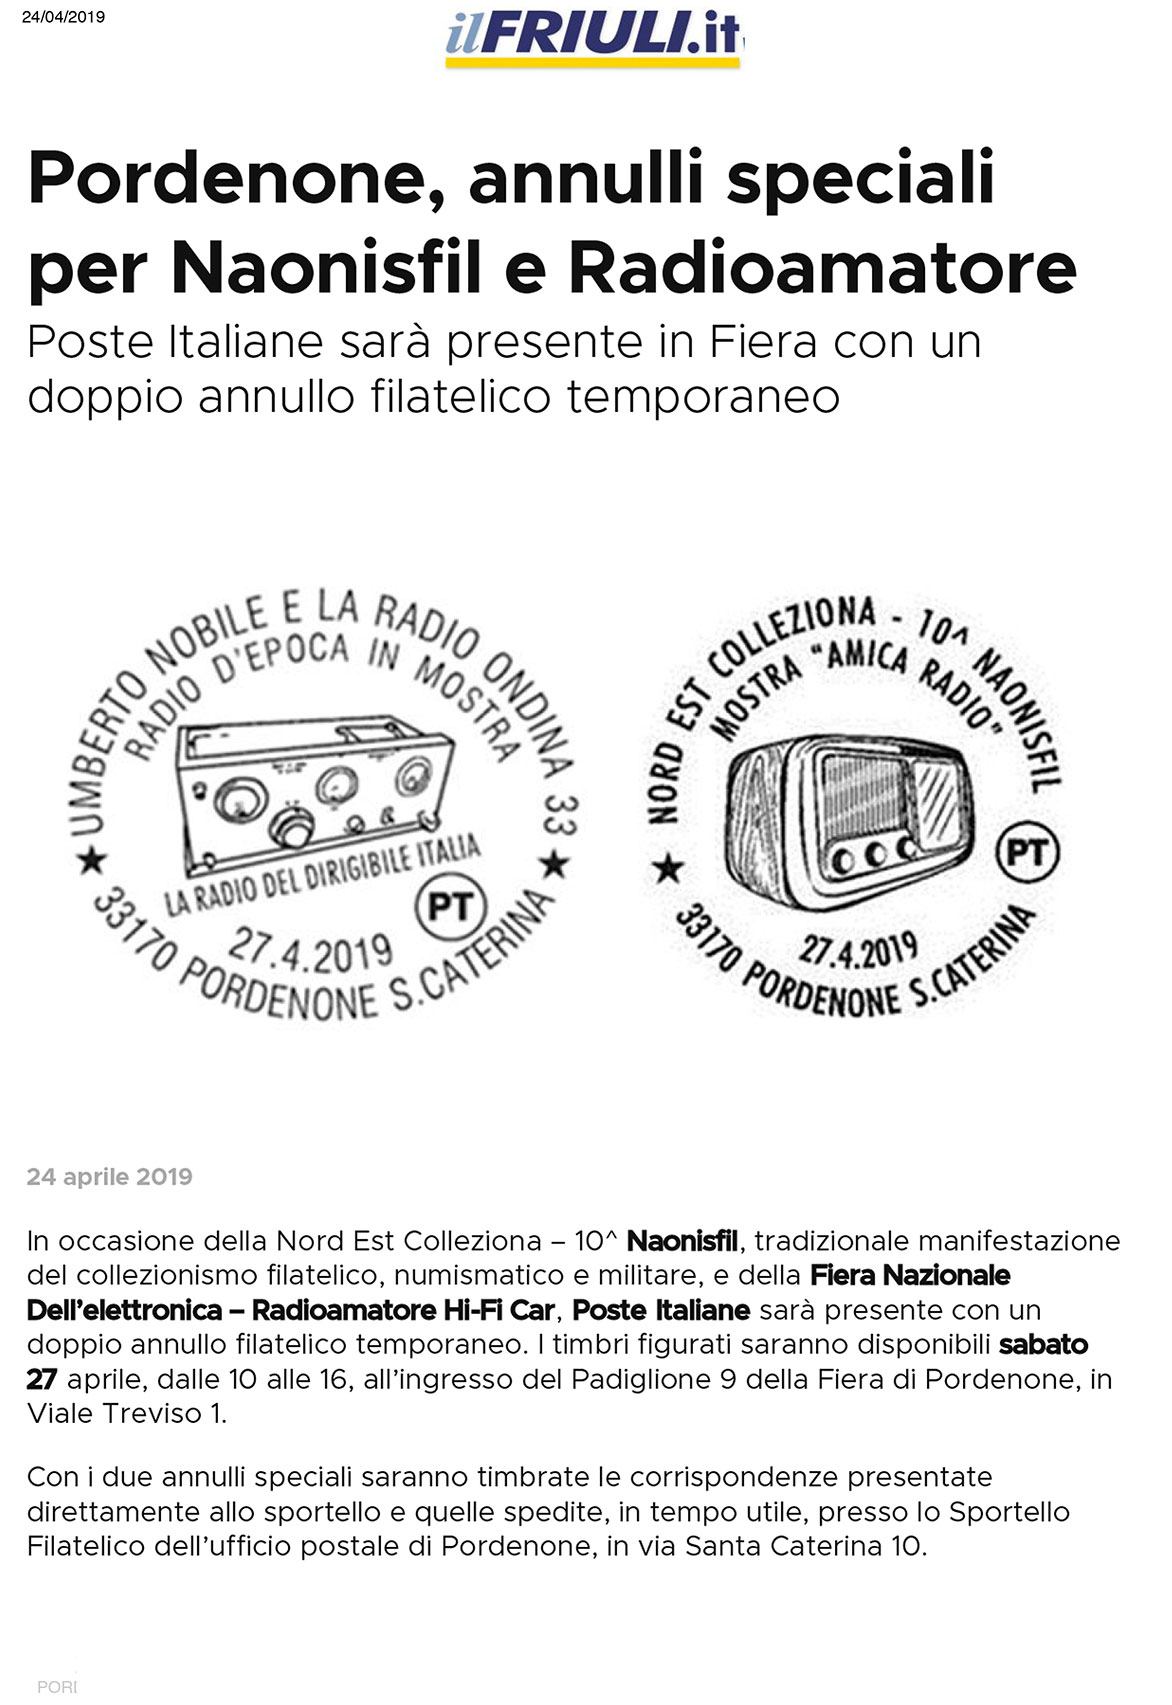 IlFriuli 24052019 Rassegna Stampa Radioamatore Fiera 2019